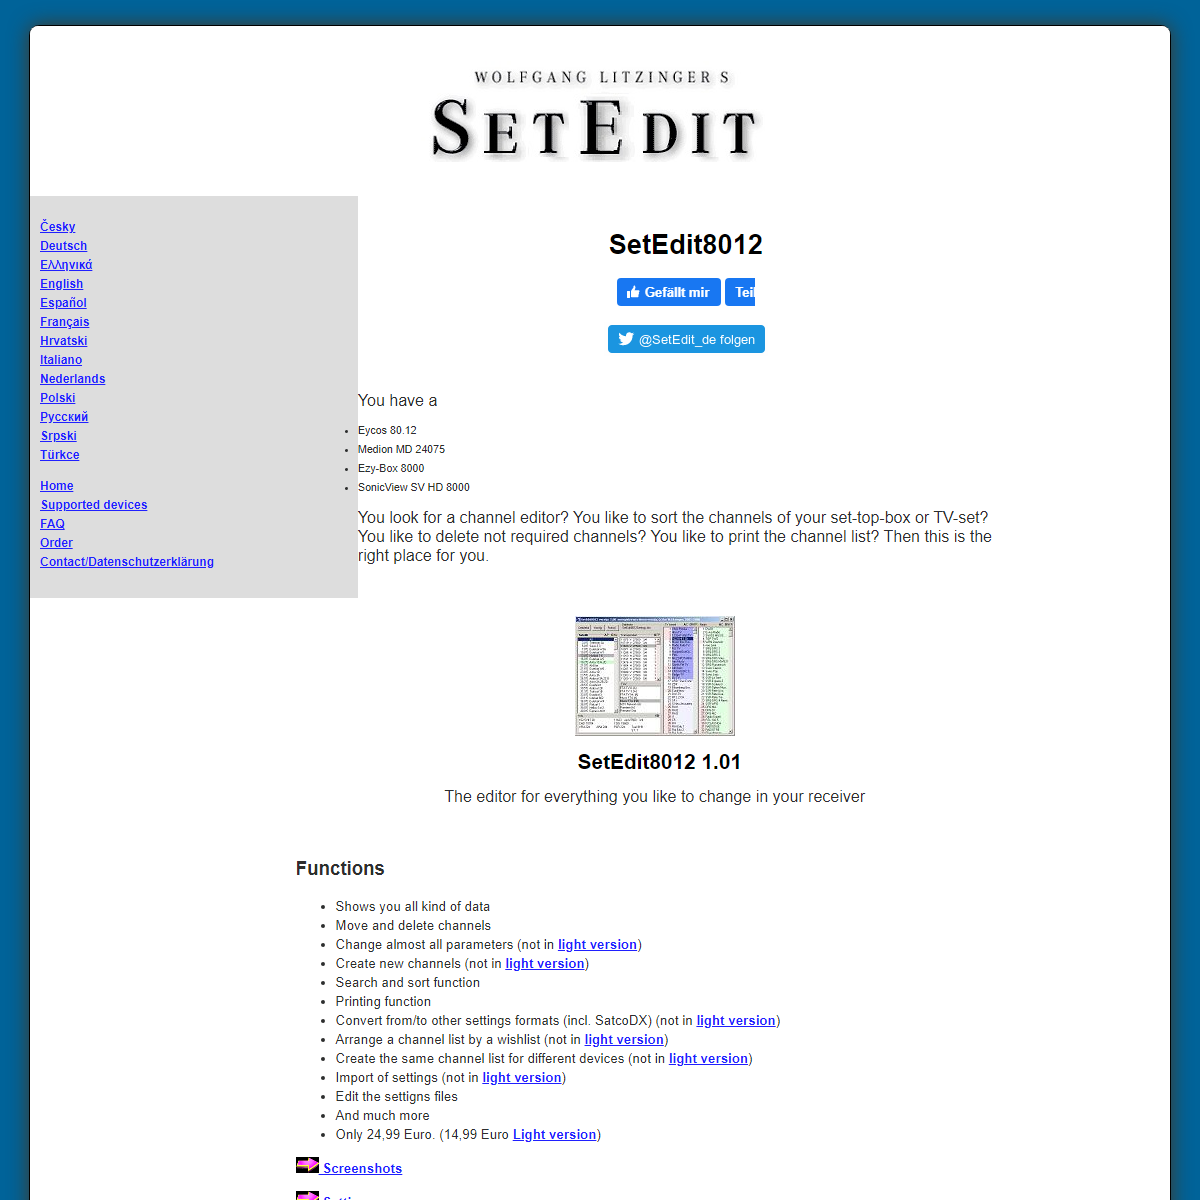 A complete backup of https://www.setedit.de/SetEdit.php?spr=2&Editor=97